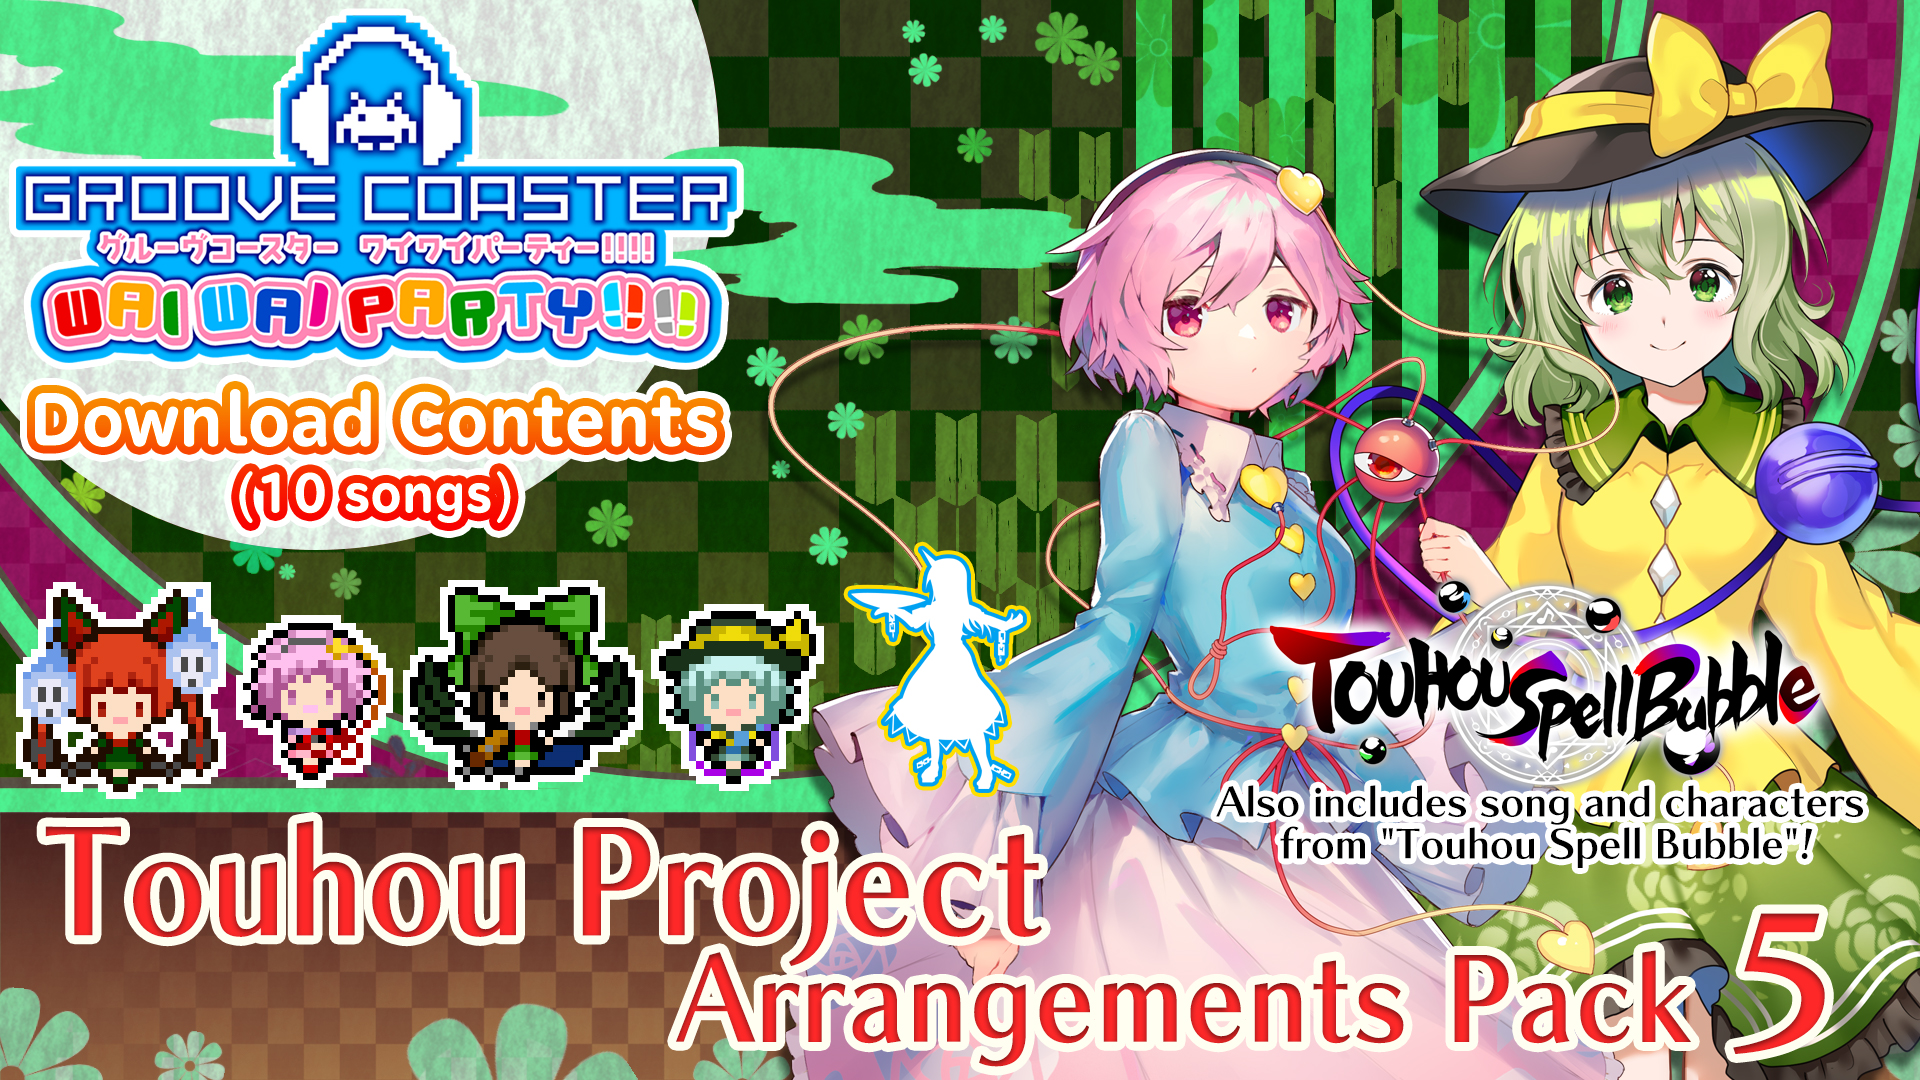 Touhou Project Arrangements Pack 5